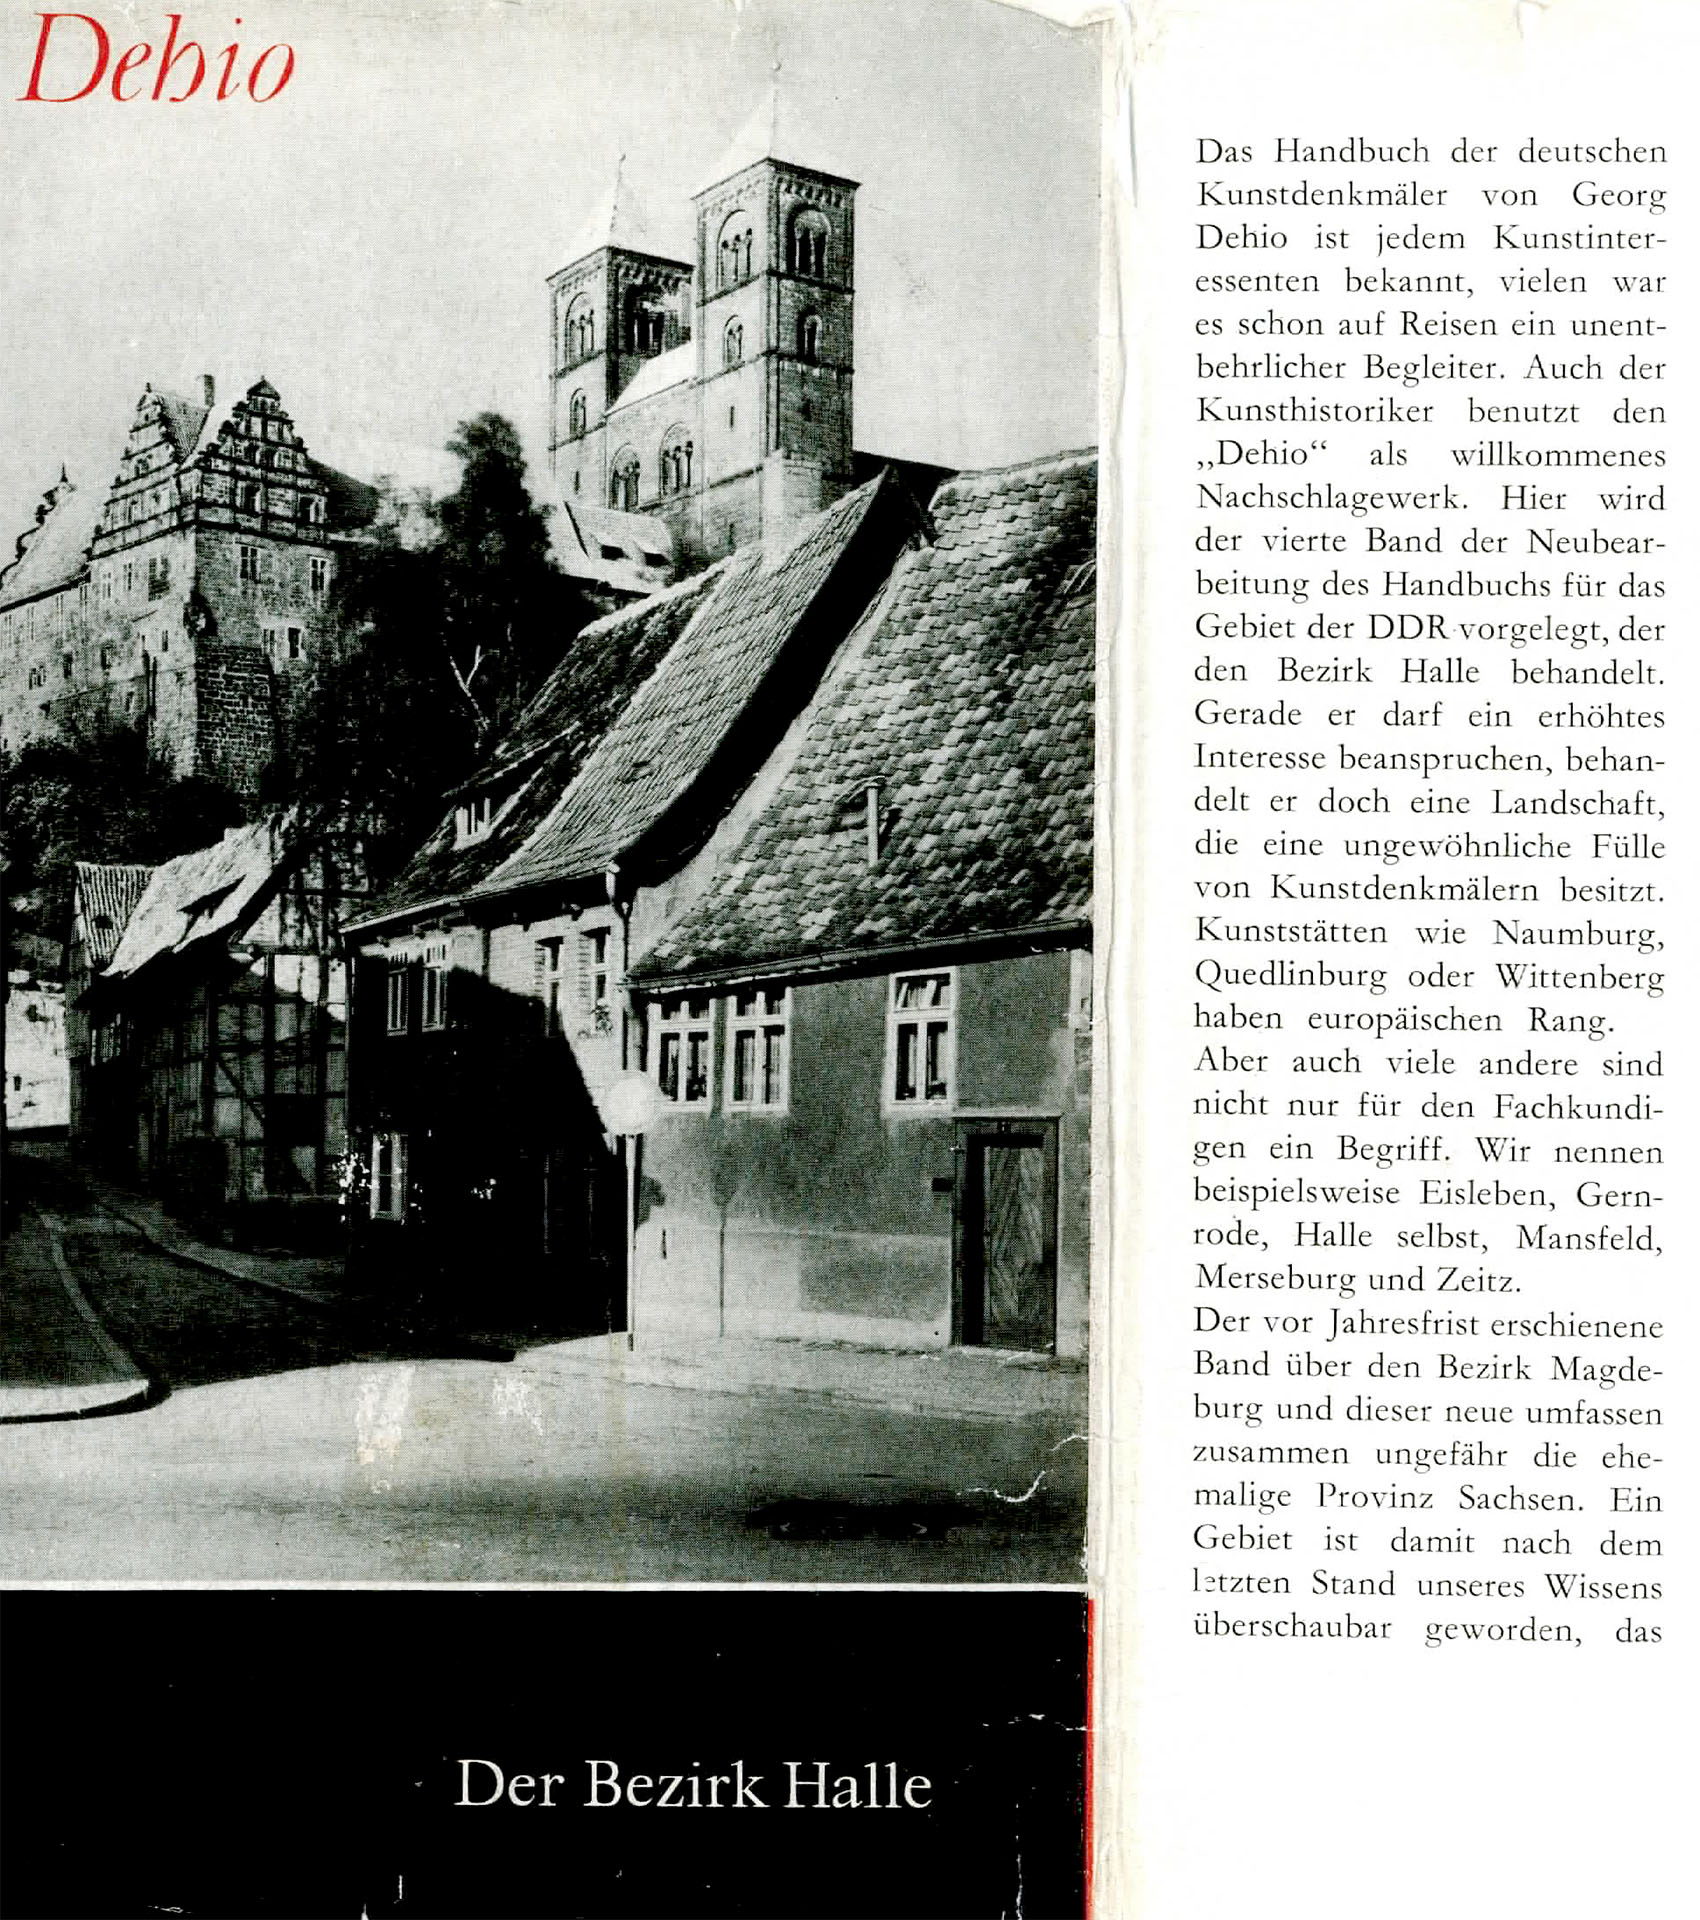 Handbuch der deutschen Kunstdenkmäler (Der Bezirk Halle) - Dehio, Georg